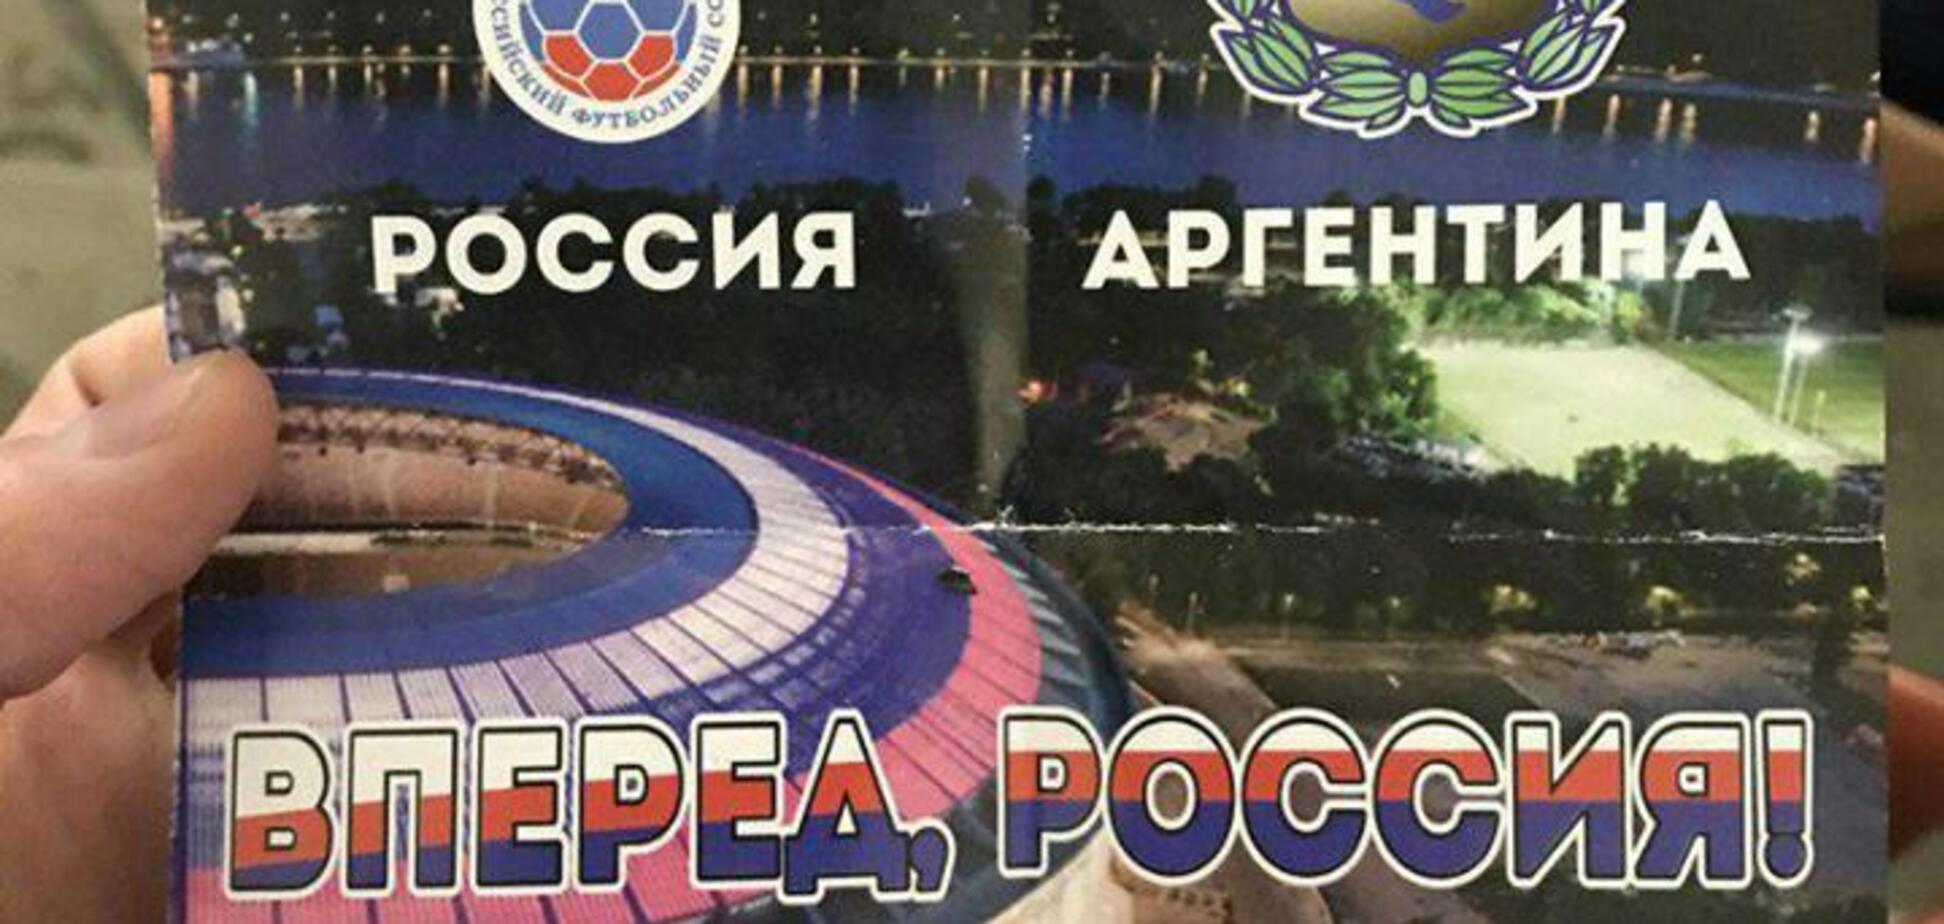 'Муки': у мережі показали епічний ляп з прапором Росії перед матчем з Аргентиною  - фотофакт